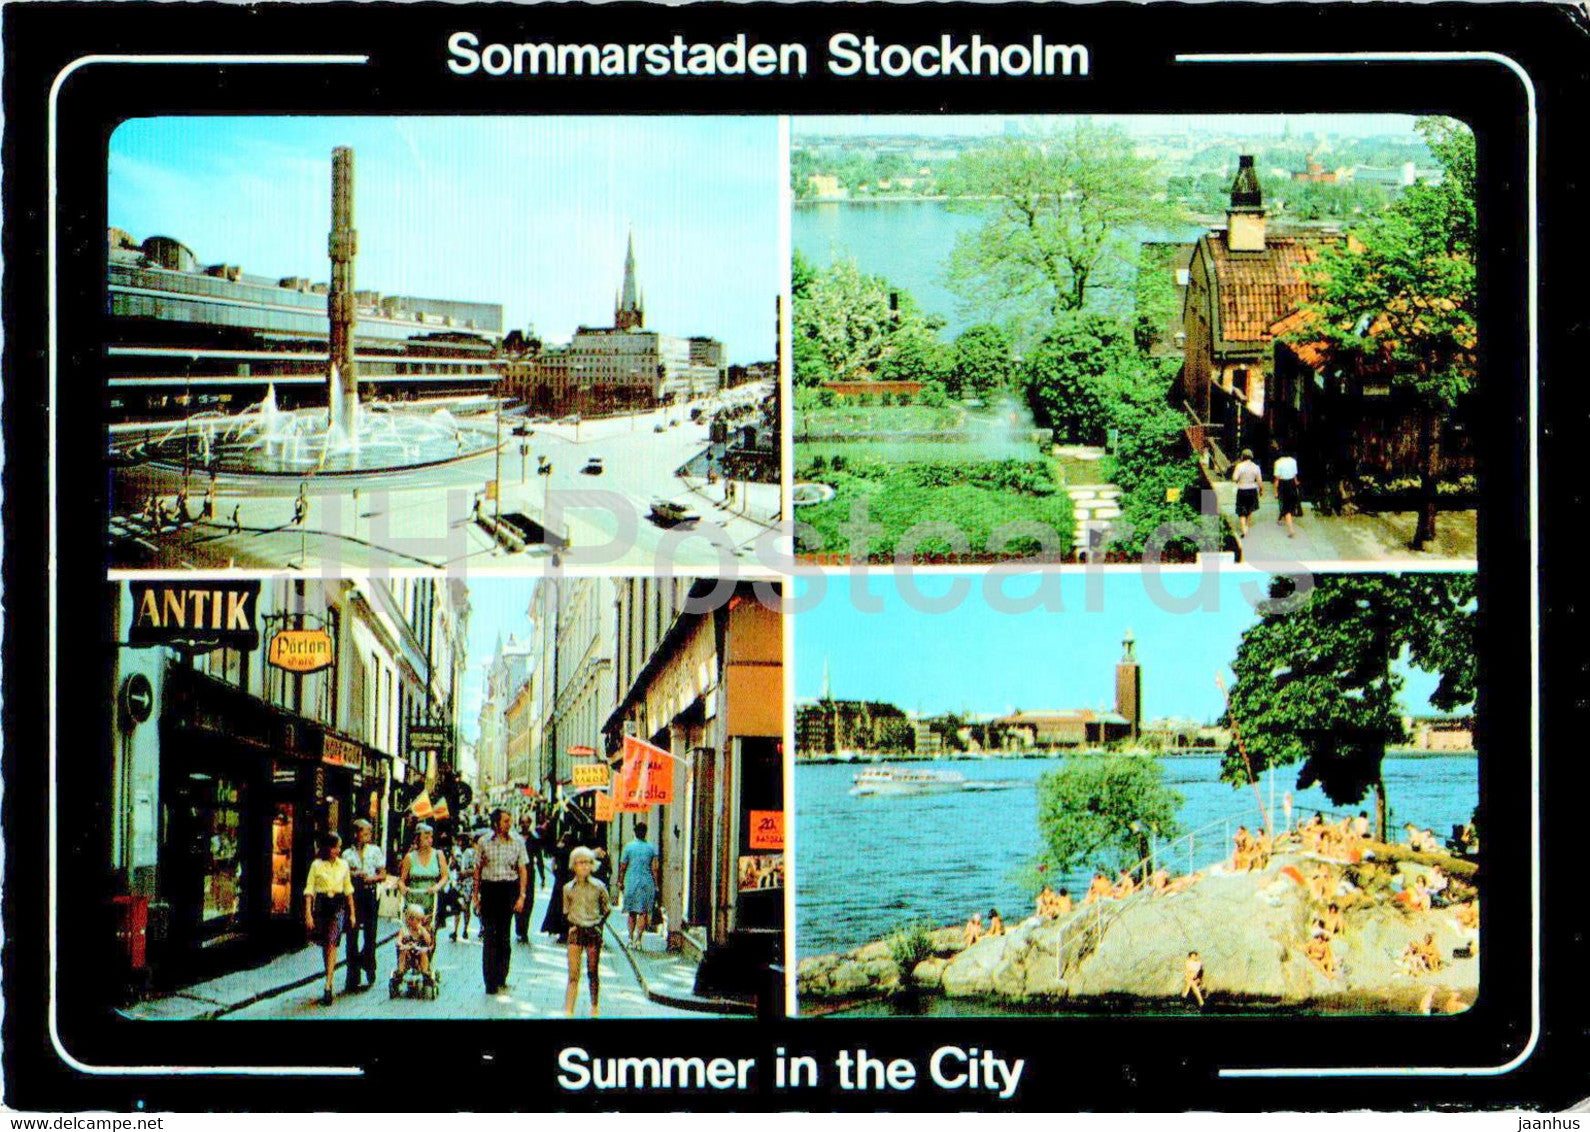 Stockholm - Sommarstaden - Summer in the City - multiview - 1986 - Sweden - used - JH Postcards